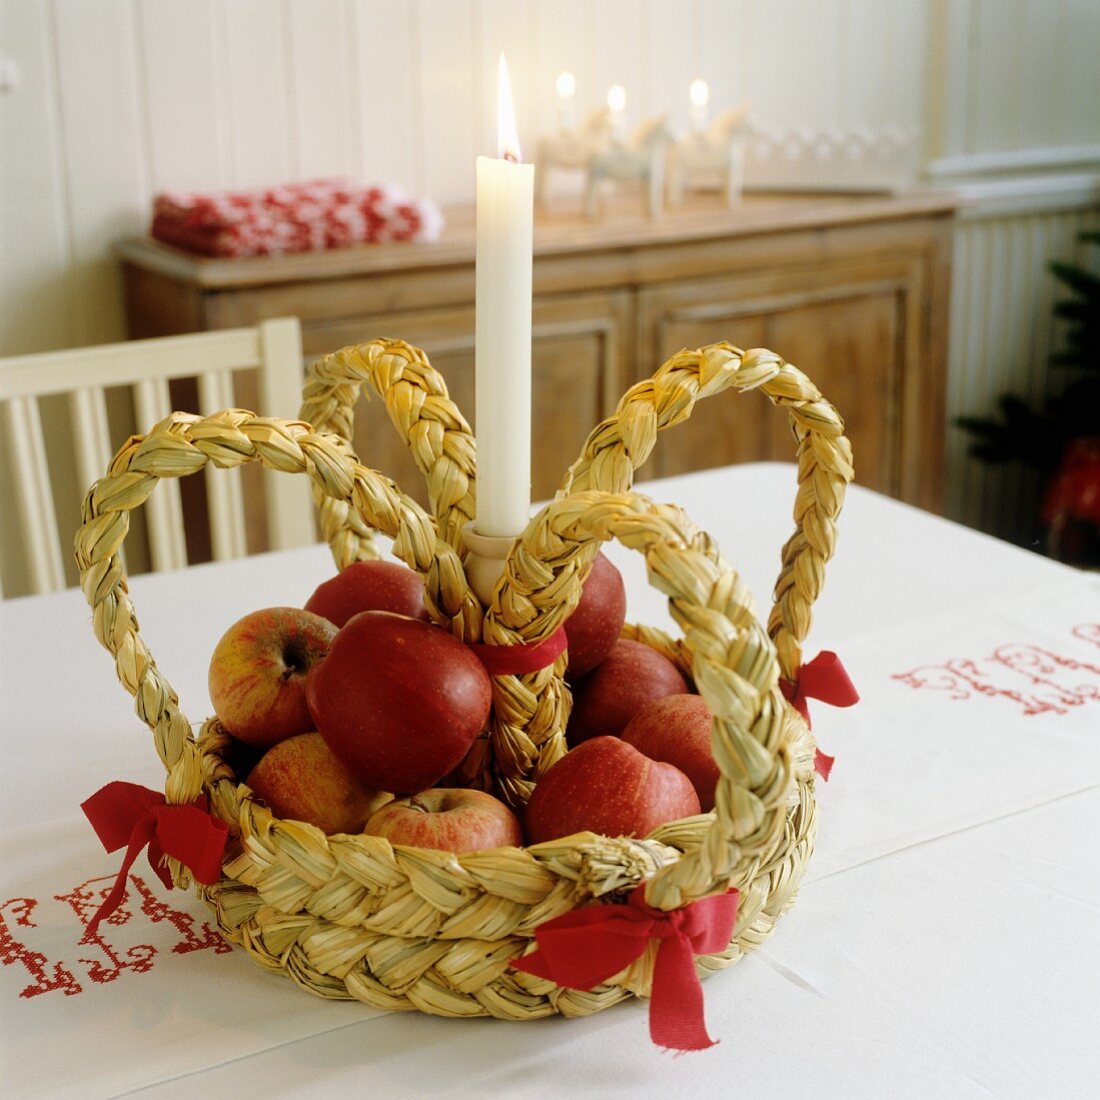 Aus Stroh geflochtene Krone mit Äpfeln und einer Kerze